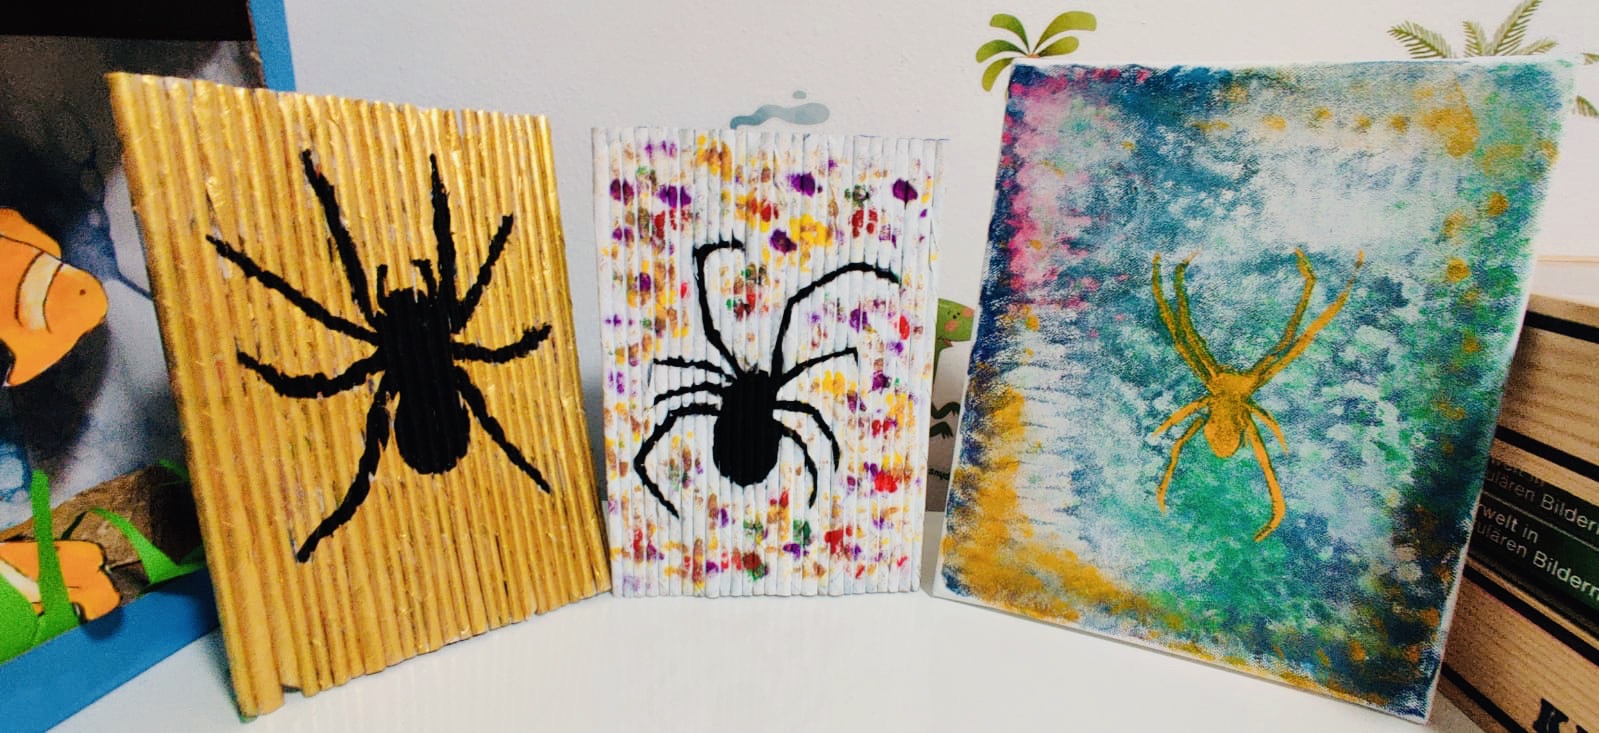 spider art exhibition